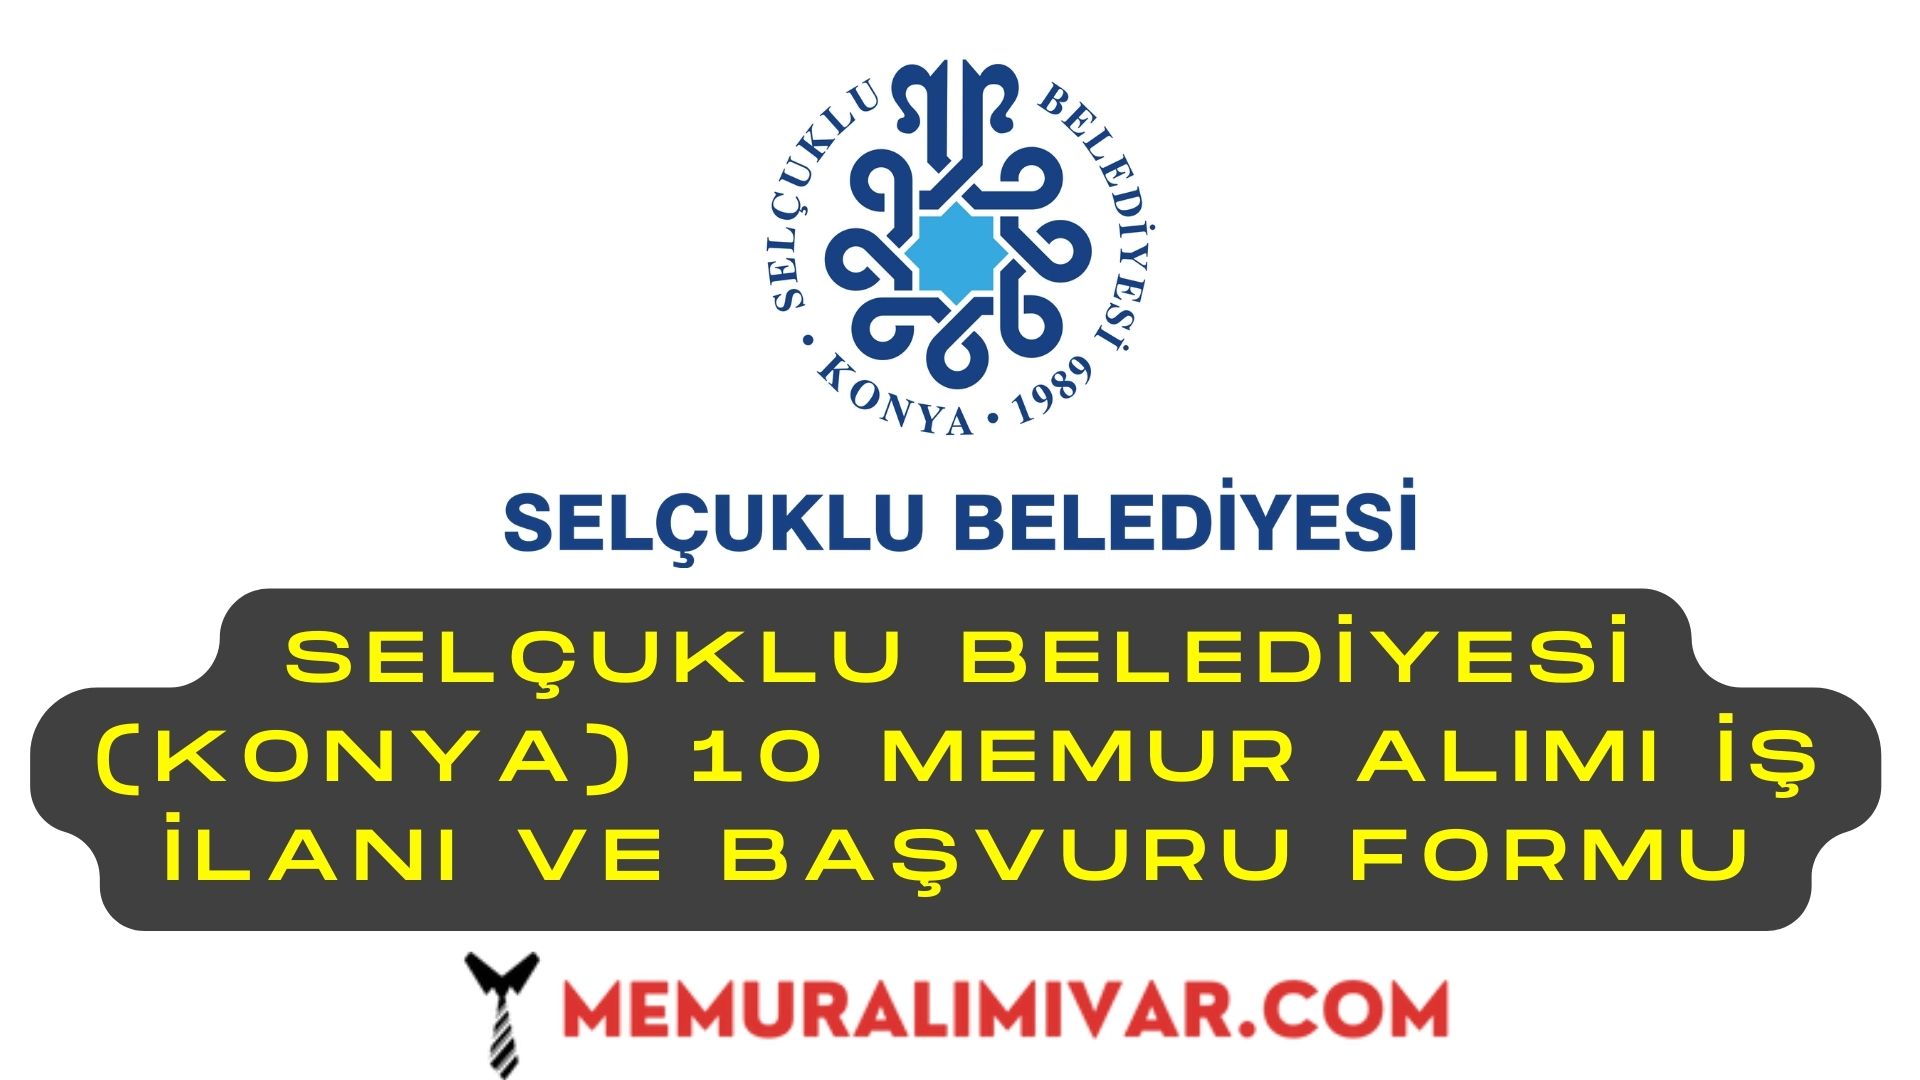 Selçuklu Belediyesi (Konya) 10 Memur Alımı İş İlanı ve Başvuru Formu